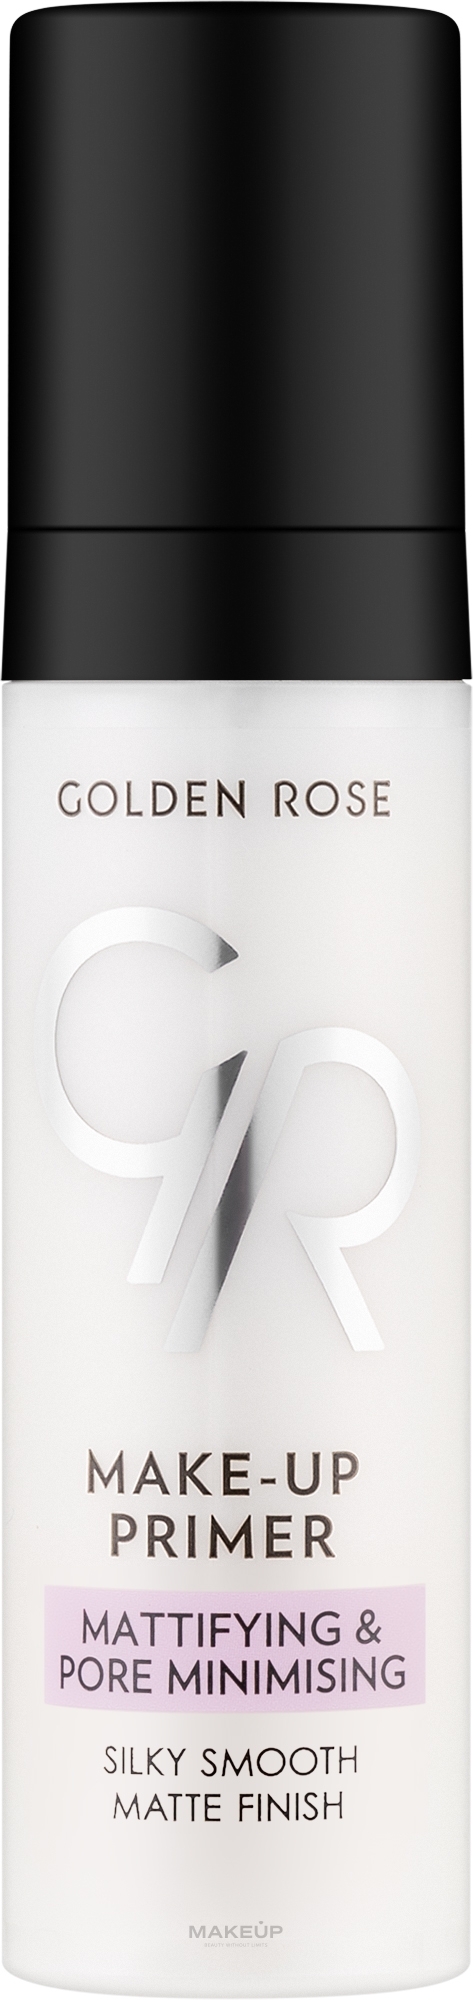 Matująca baza pod makijaż zmniejszająca widoczność porów - Golden Rose Make-Up Primer Mattifying & Pore Minimising — Zdjęcie 30 ml